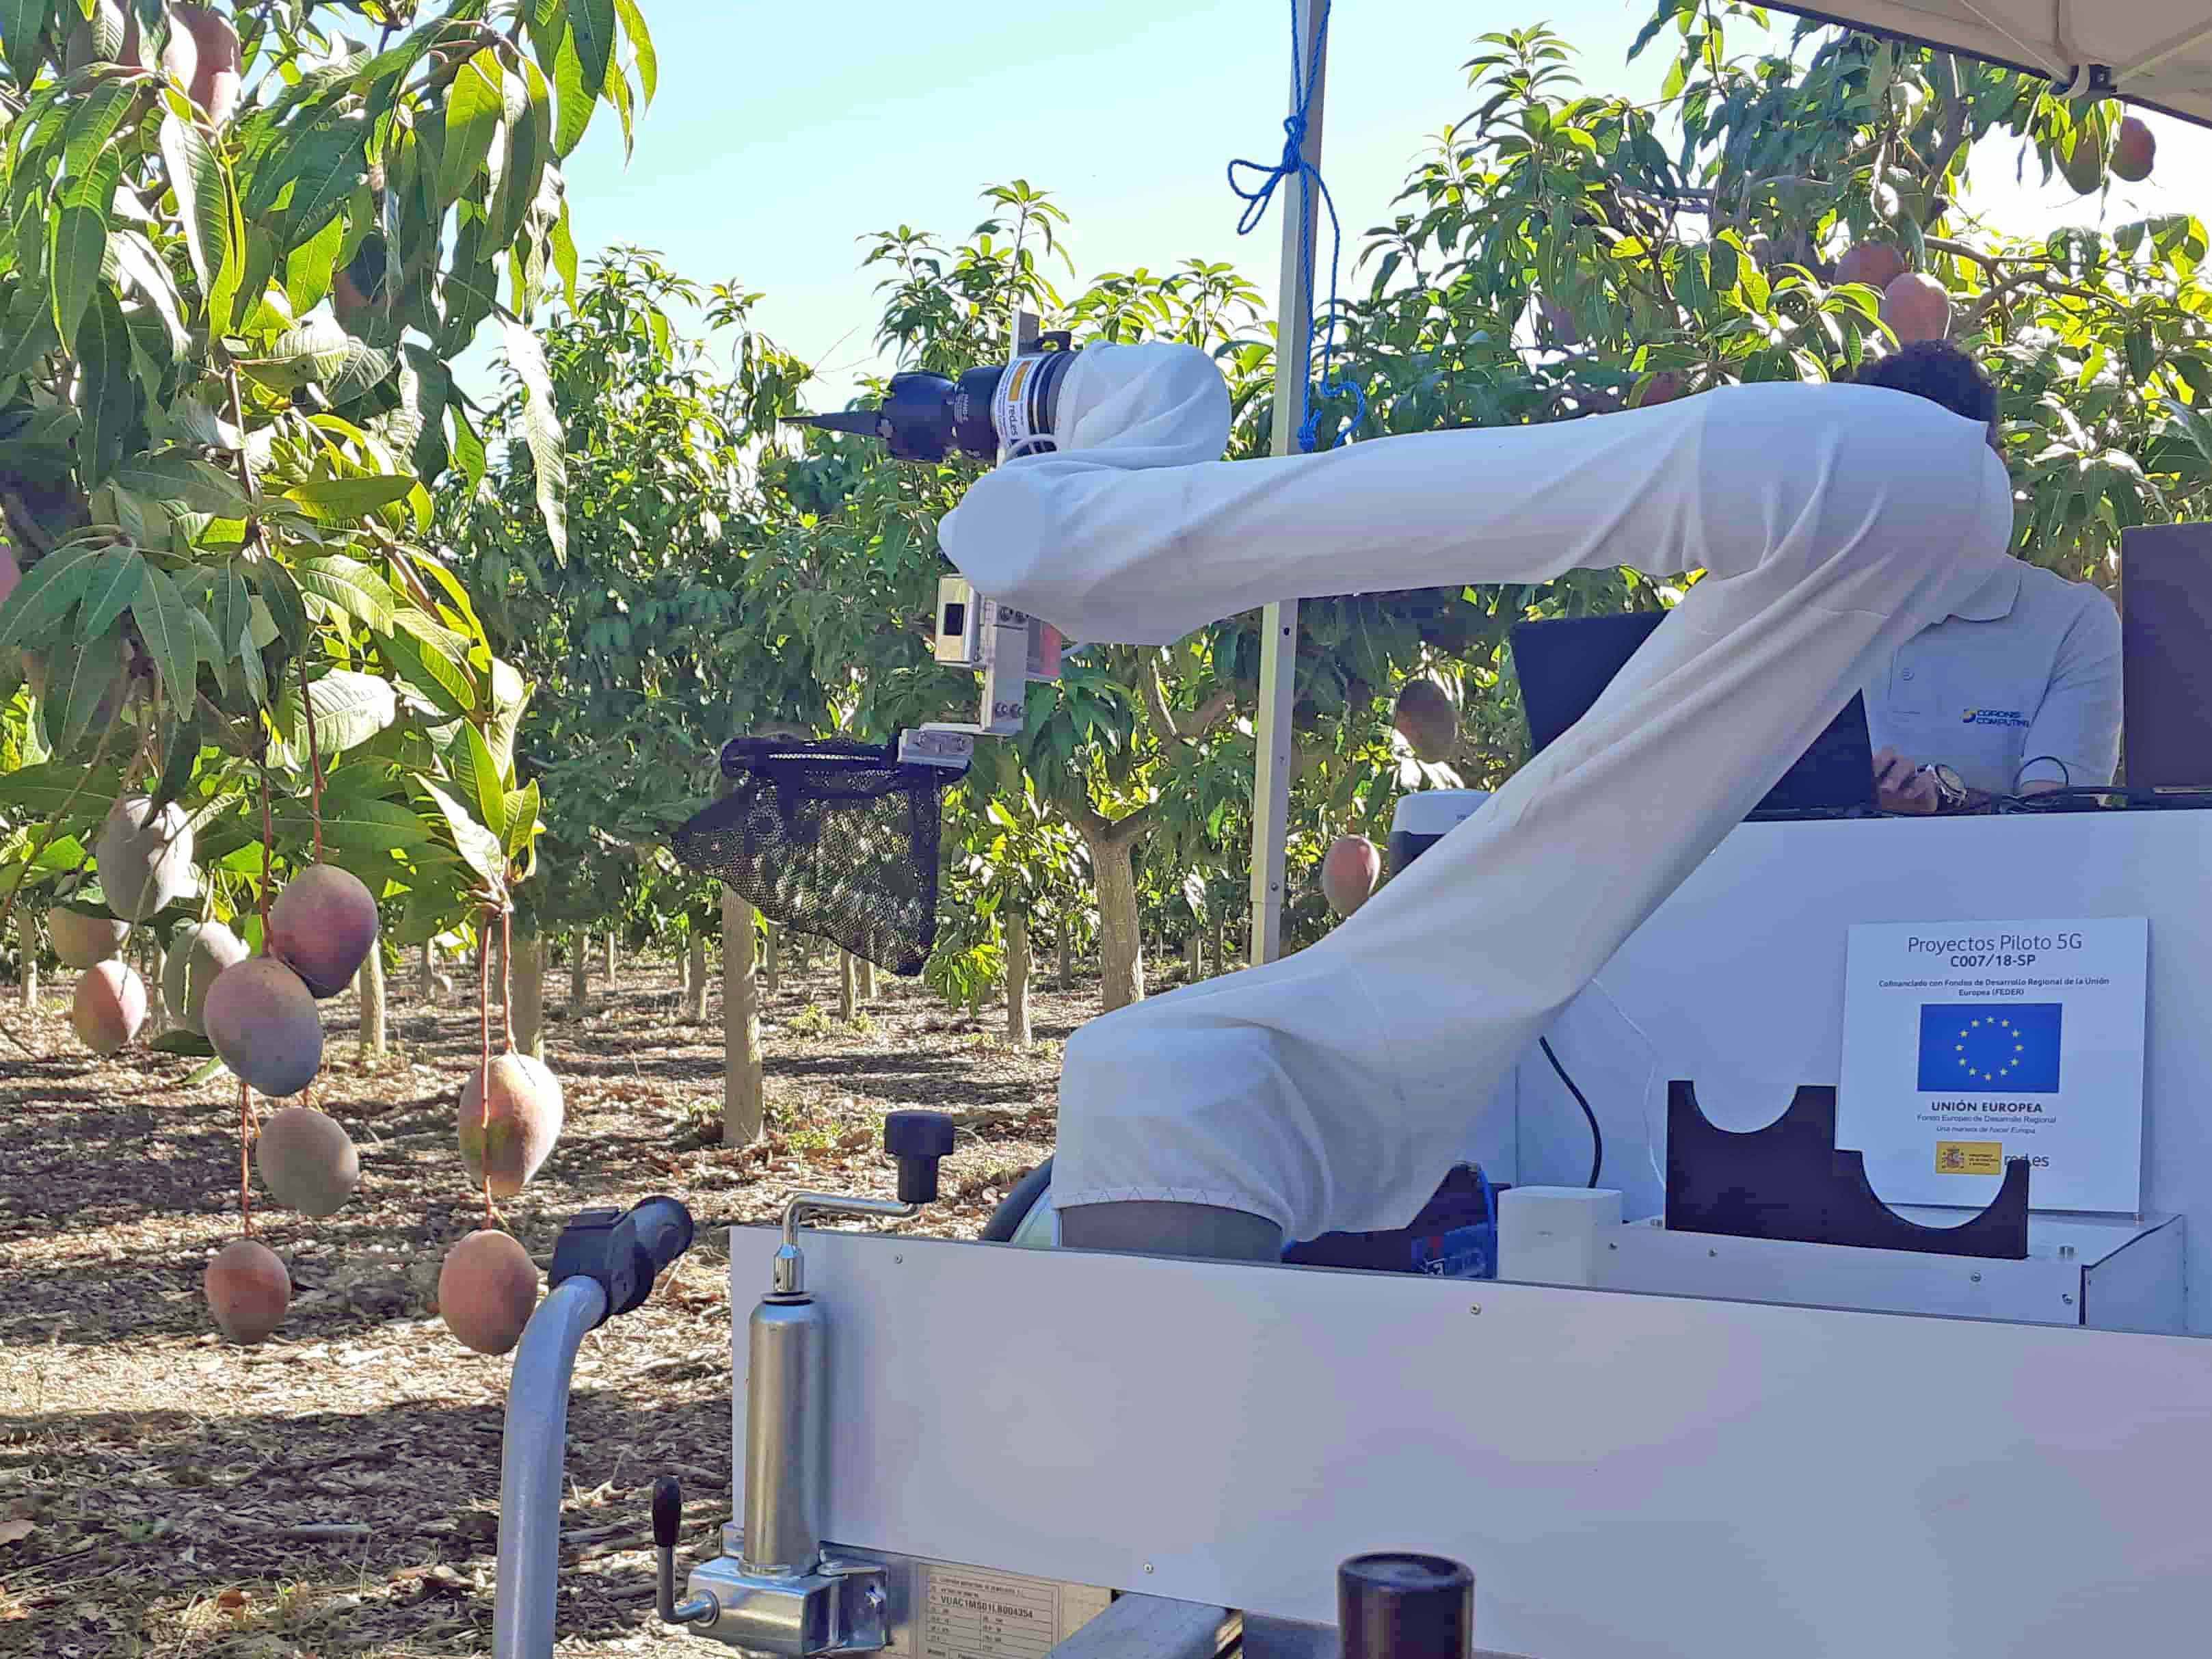 Detalle del brazo mecánico, cesta y herramienta de corte del robot para la cosecha de mango